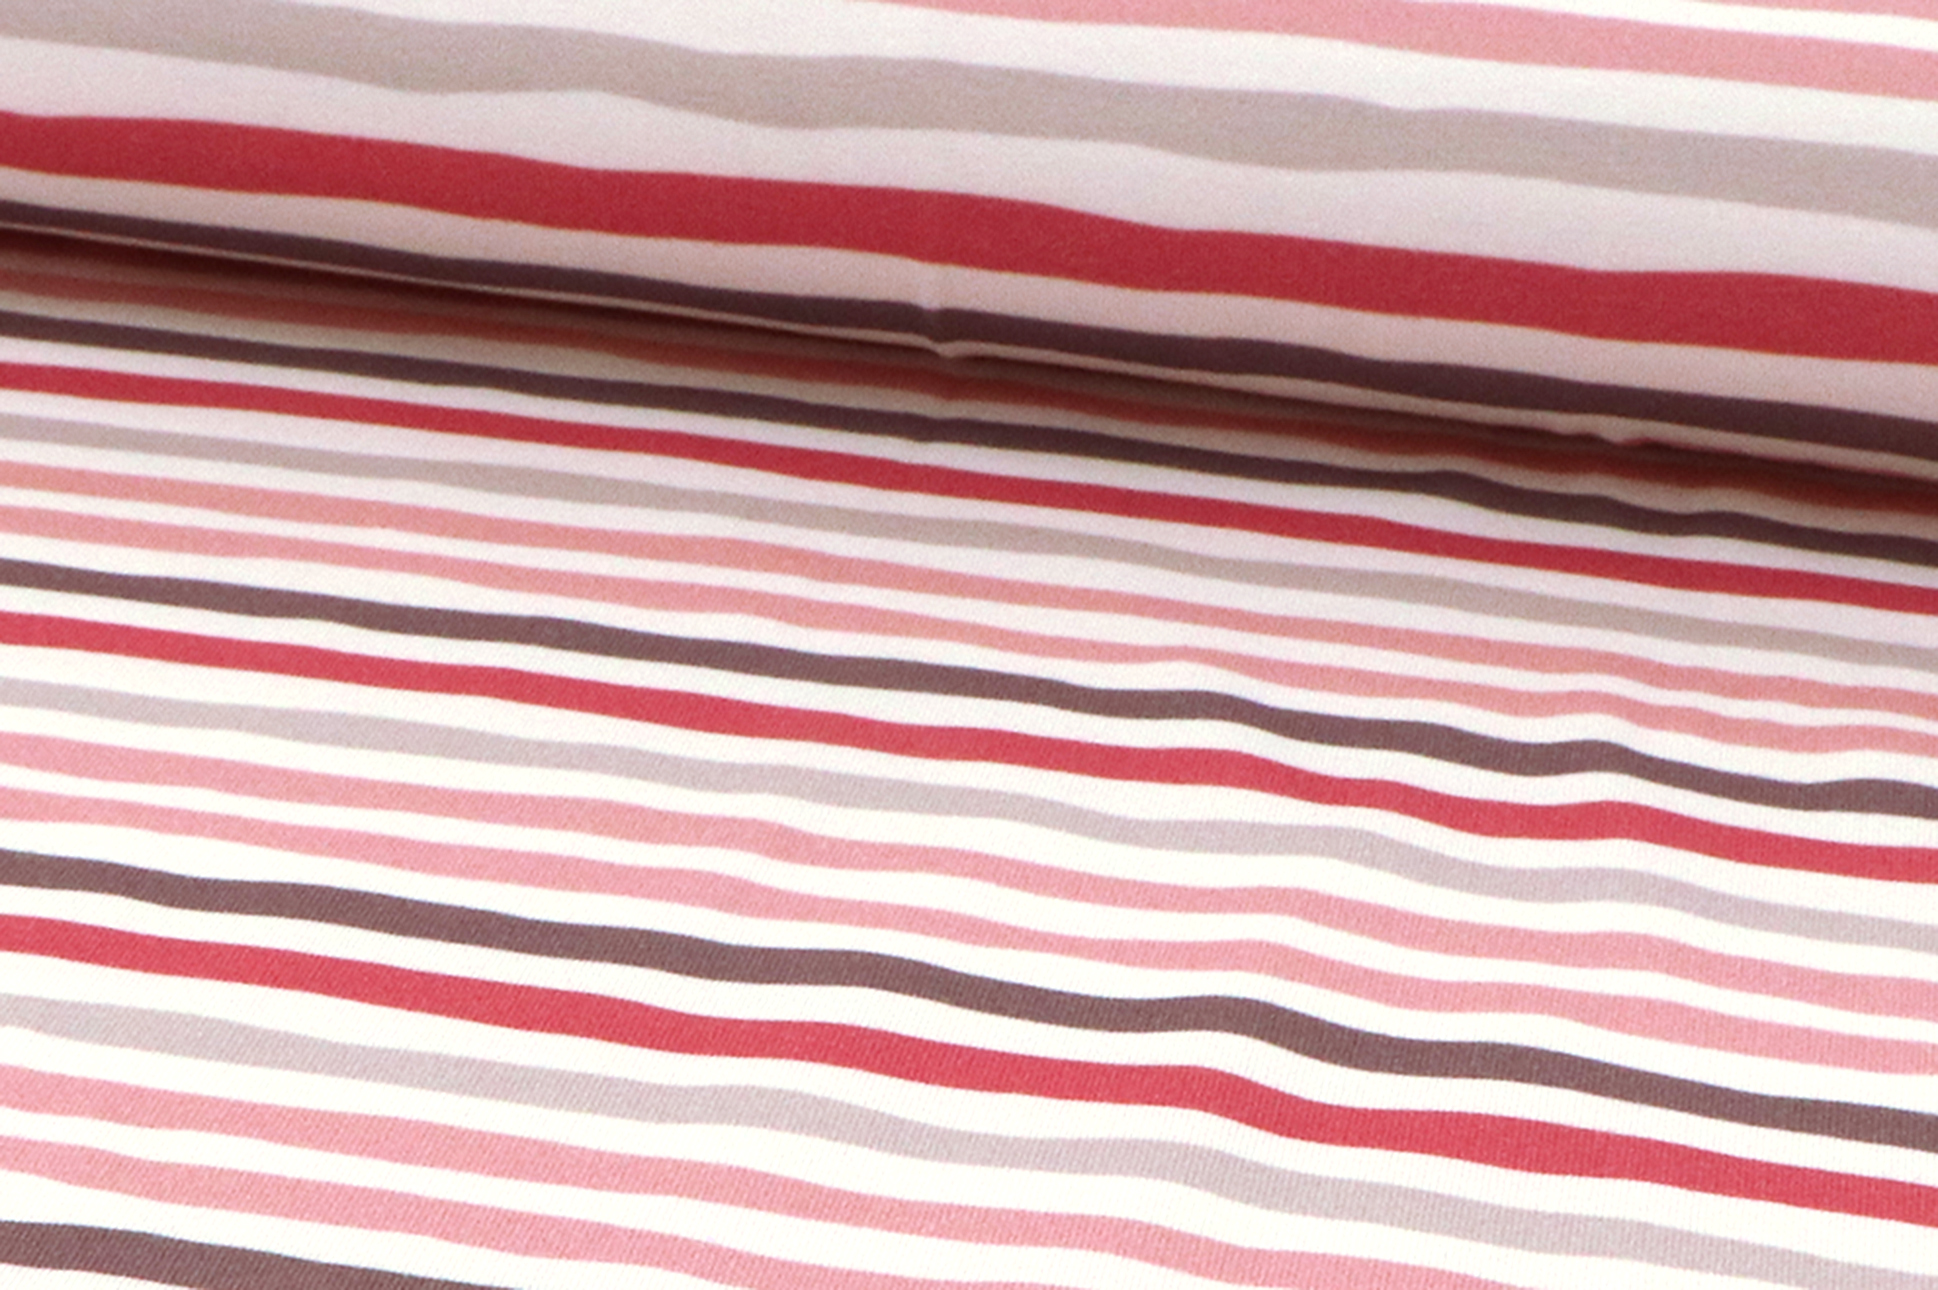 Baumwolljersey, Streifen in grau / rosa Töne auf panna